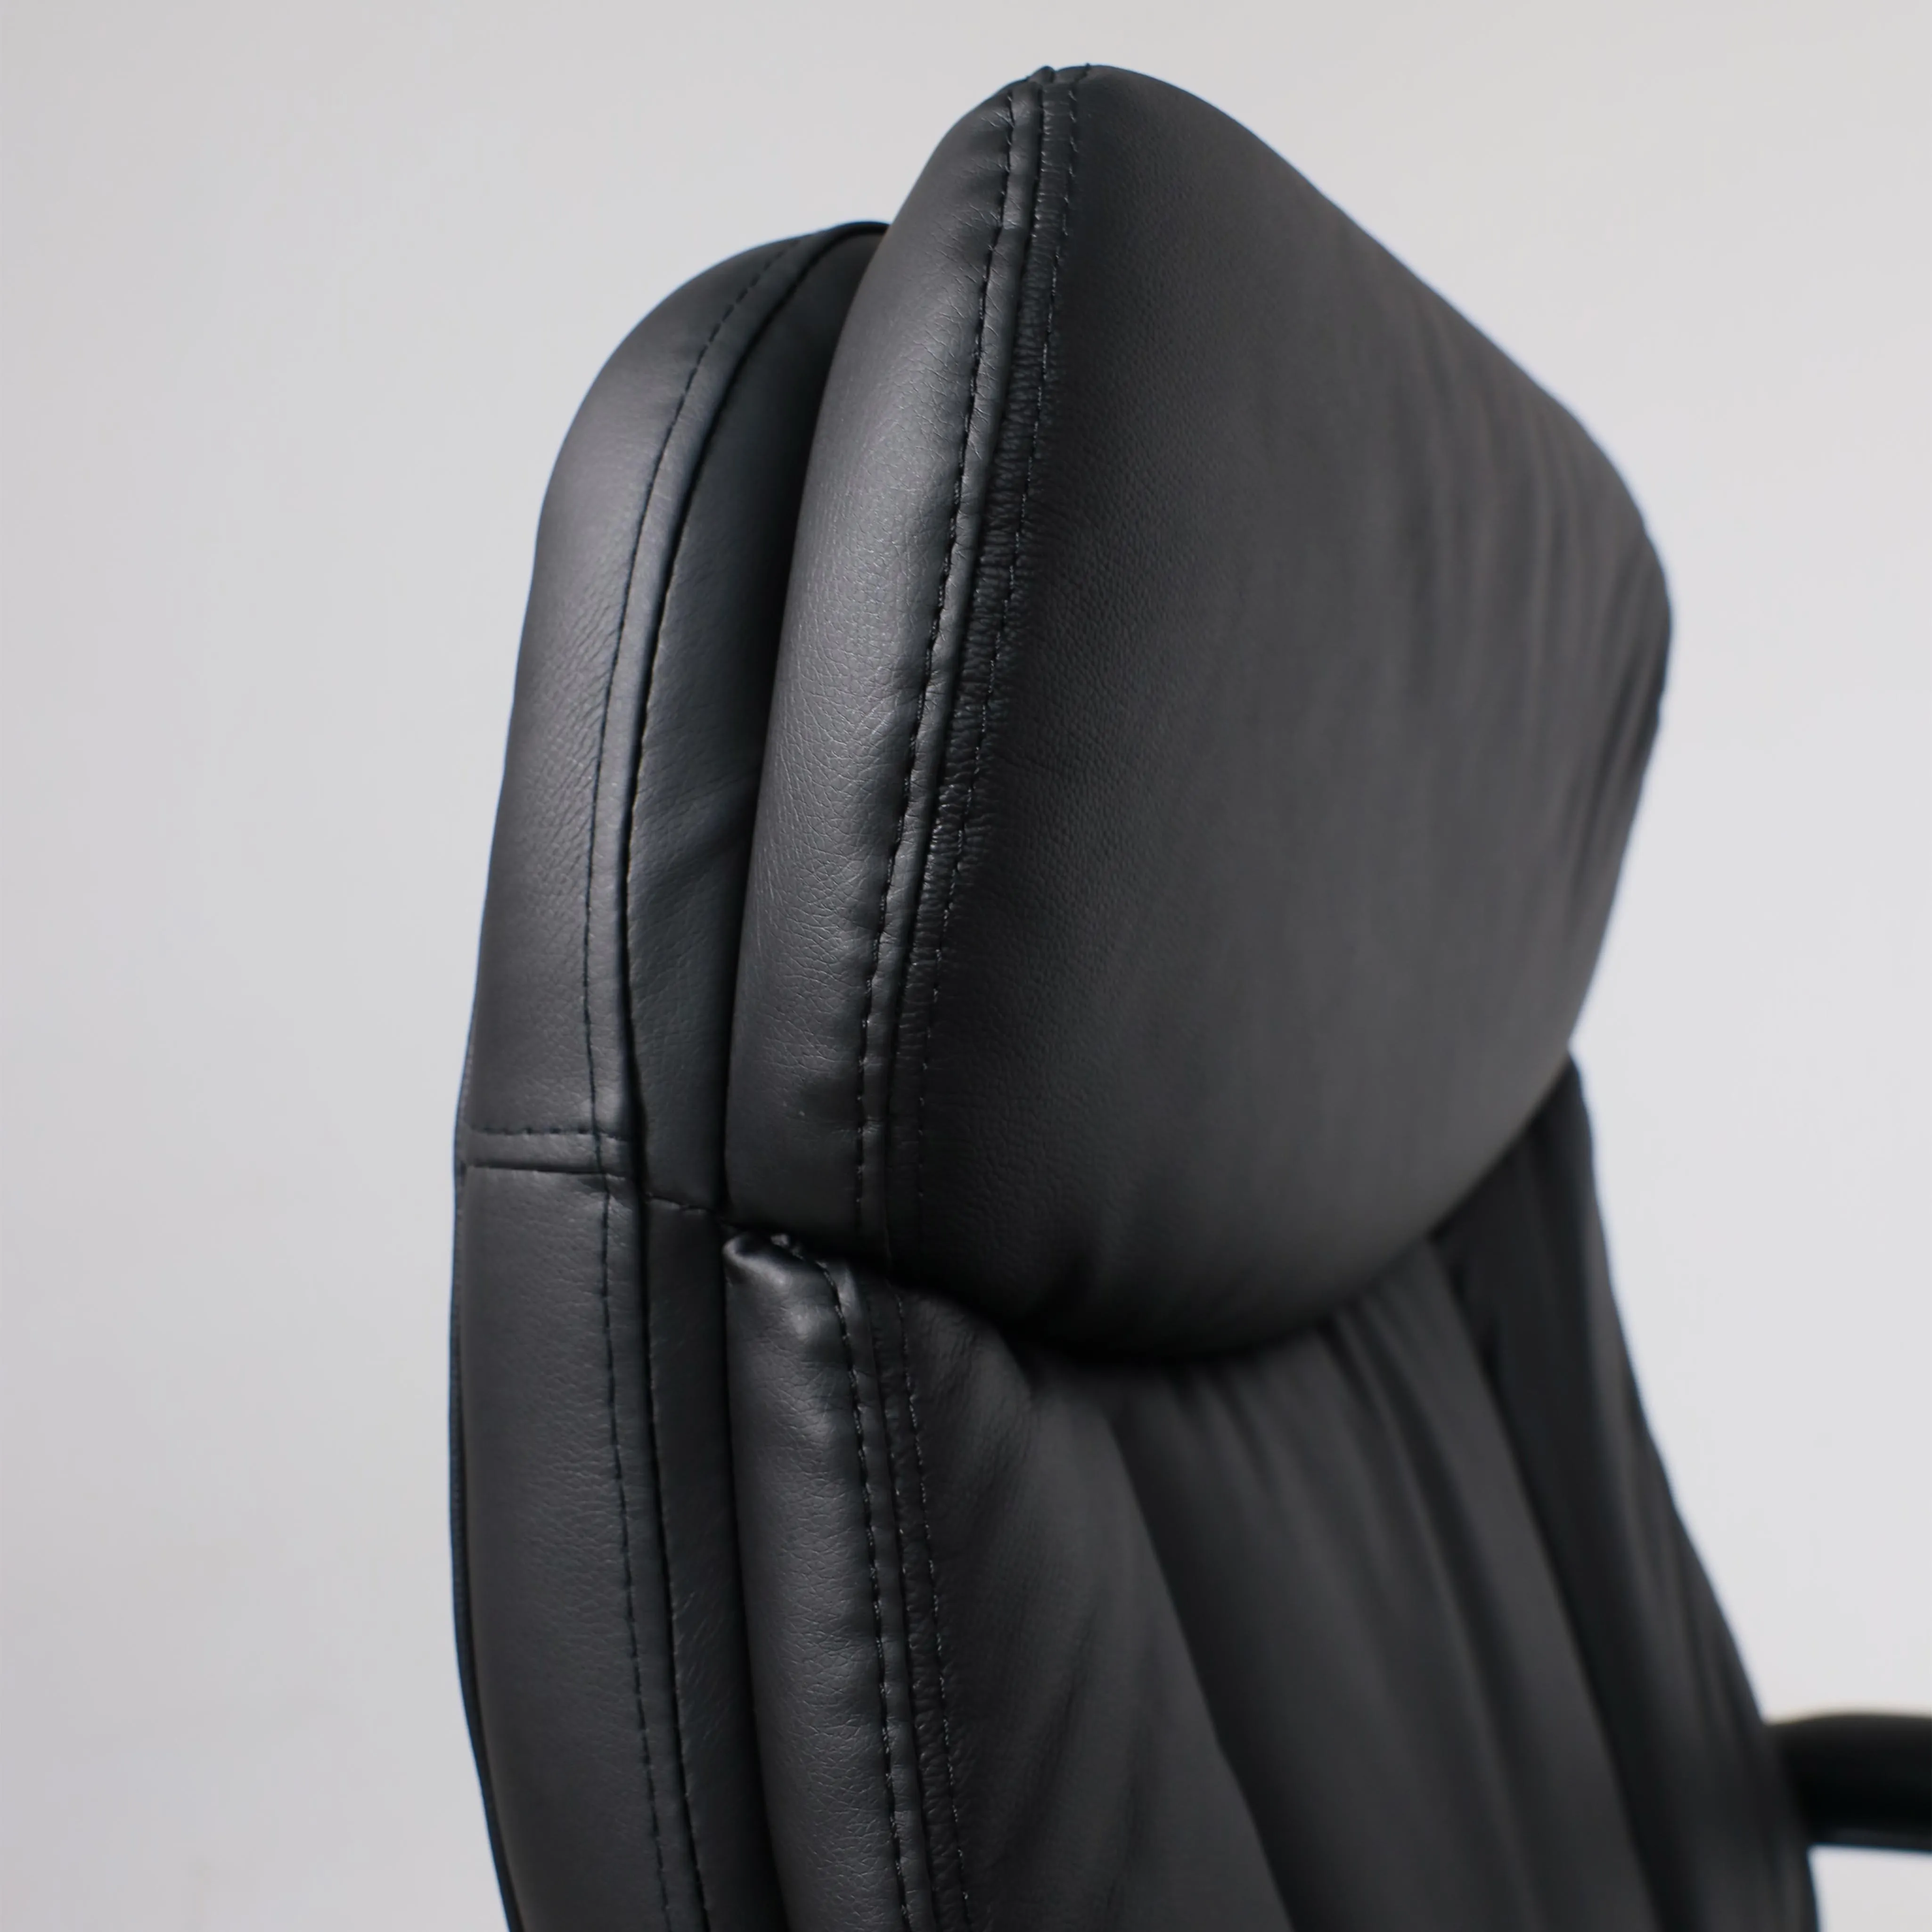 Кресло для руководителя LEONARDO натуральная кожа черный 95530